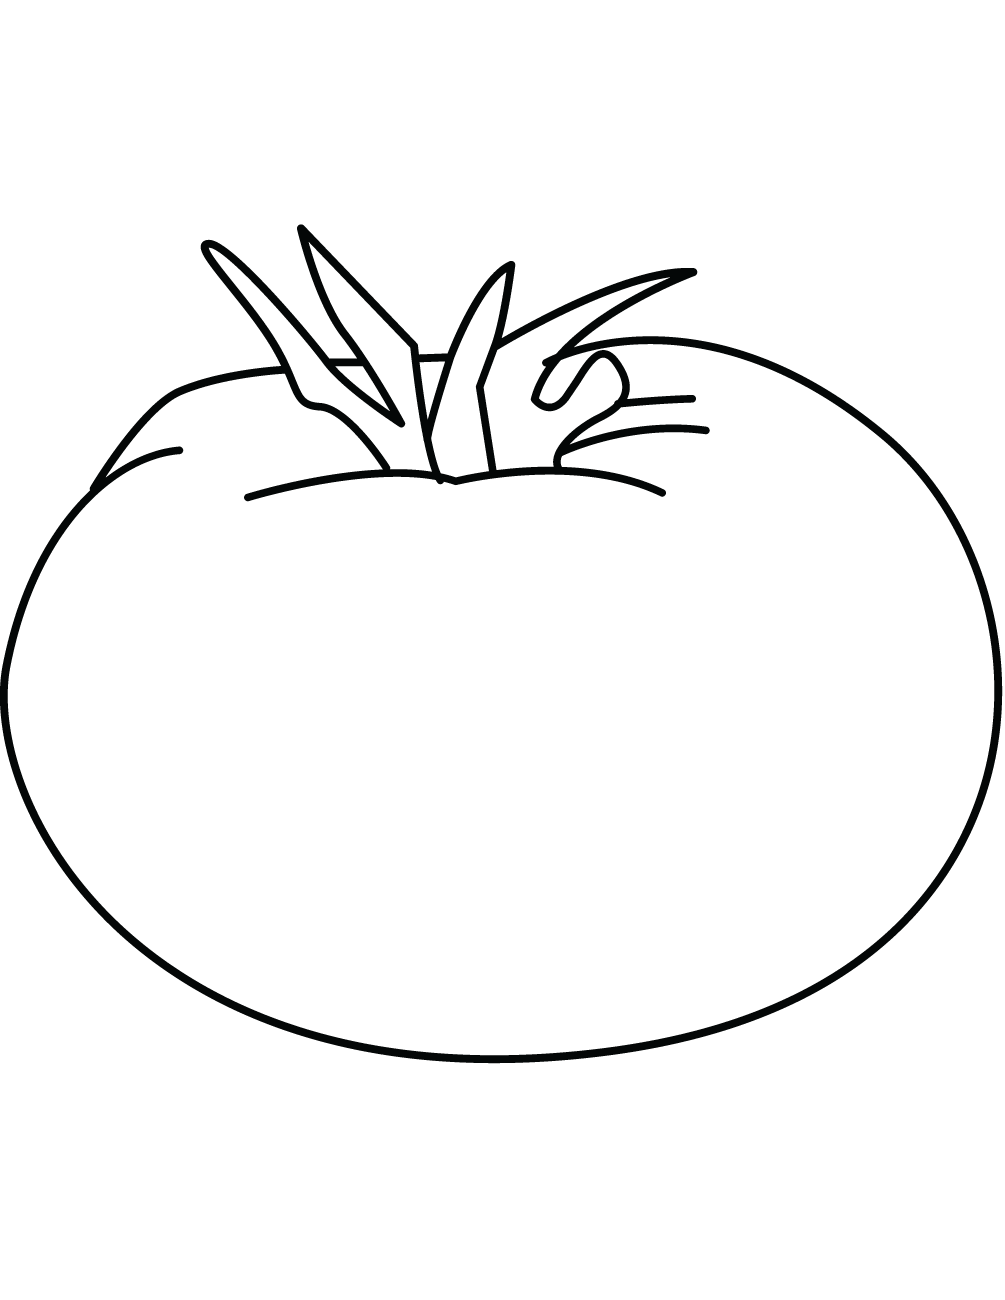 番茄简画图图片